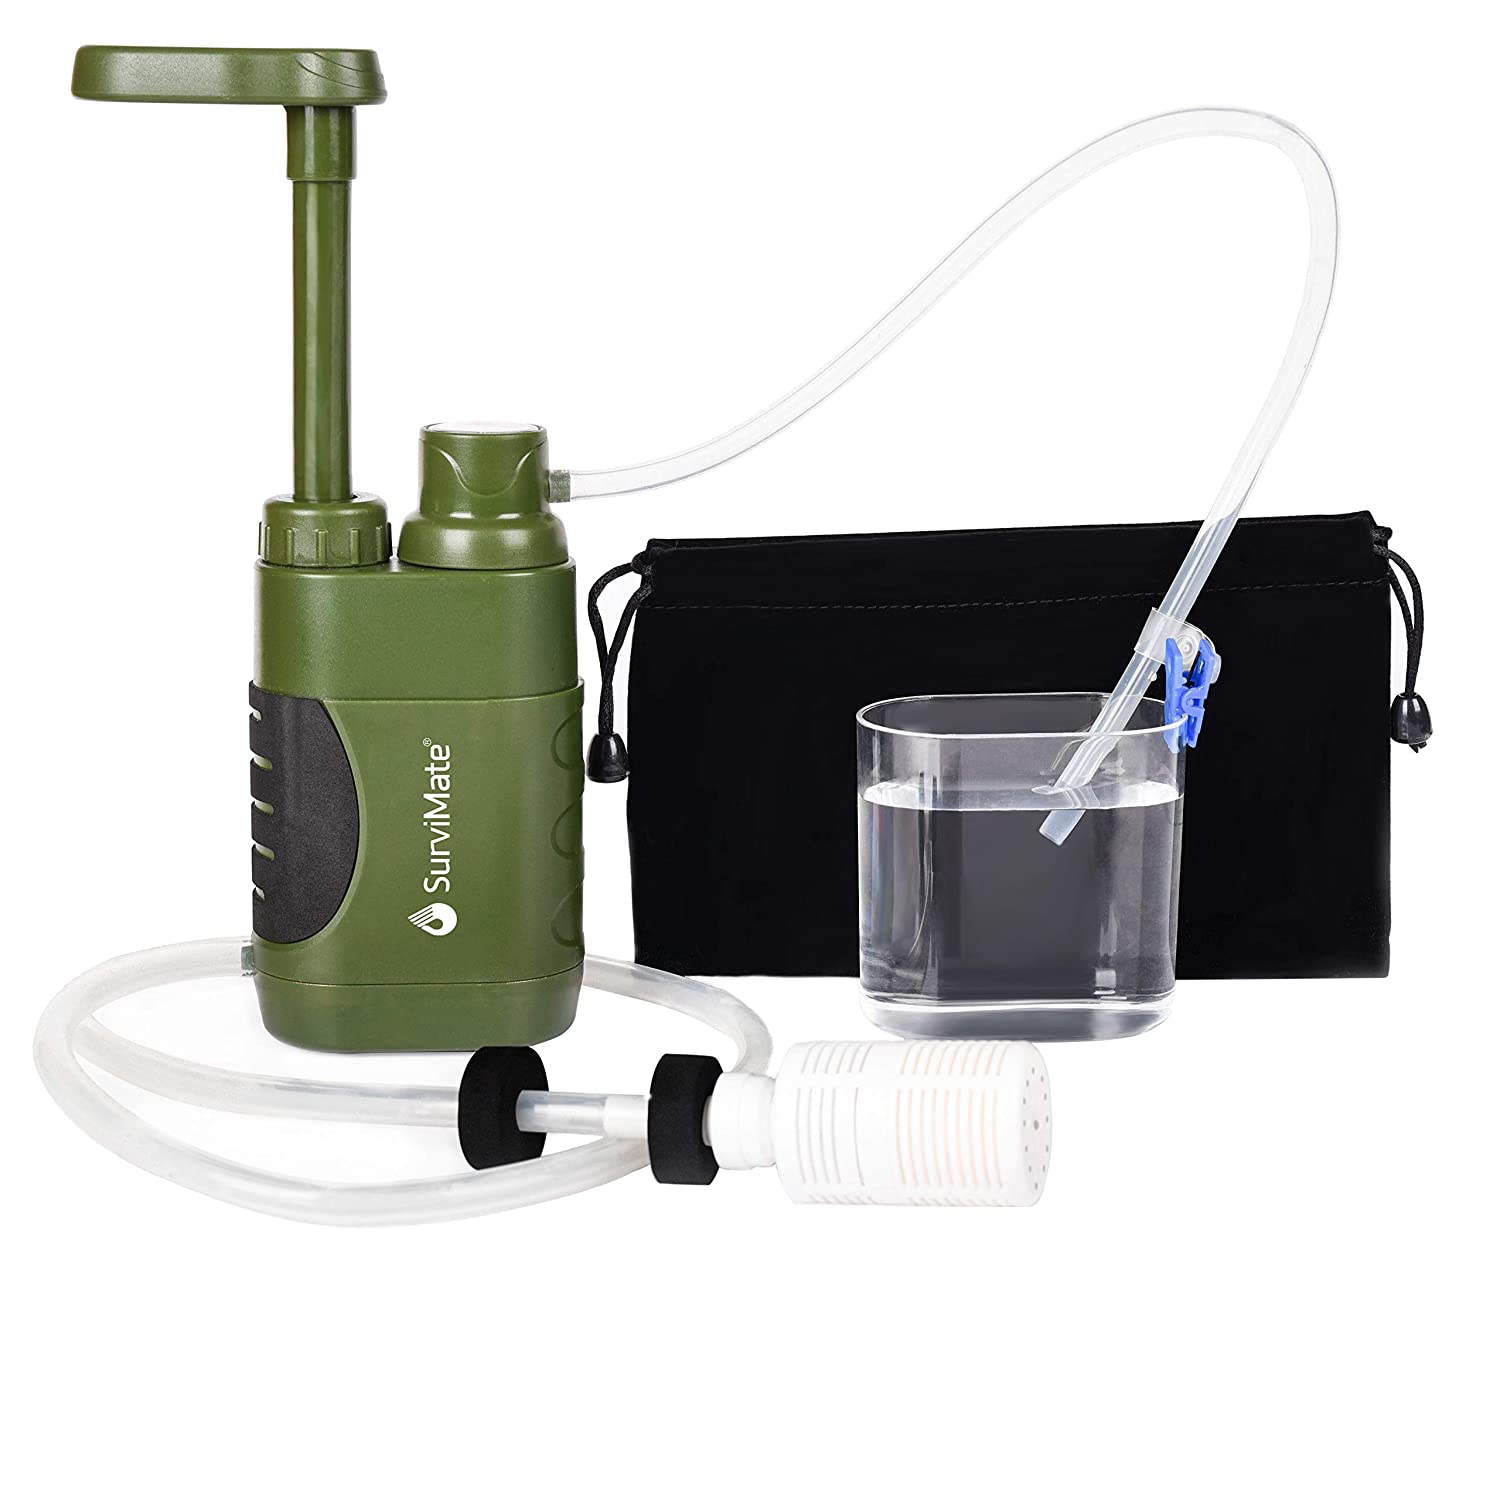 پمپ فیلتر آب قابل حمل SurviMate Portable Water Filter Pump